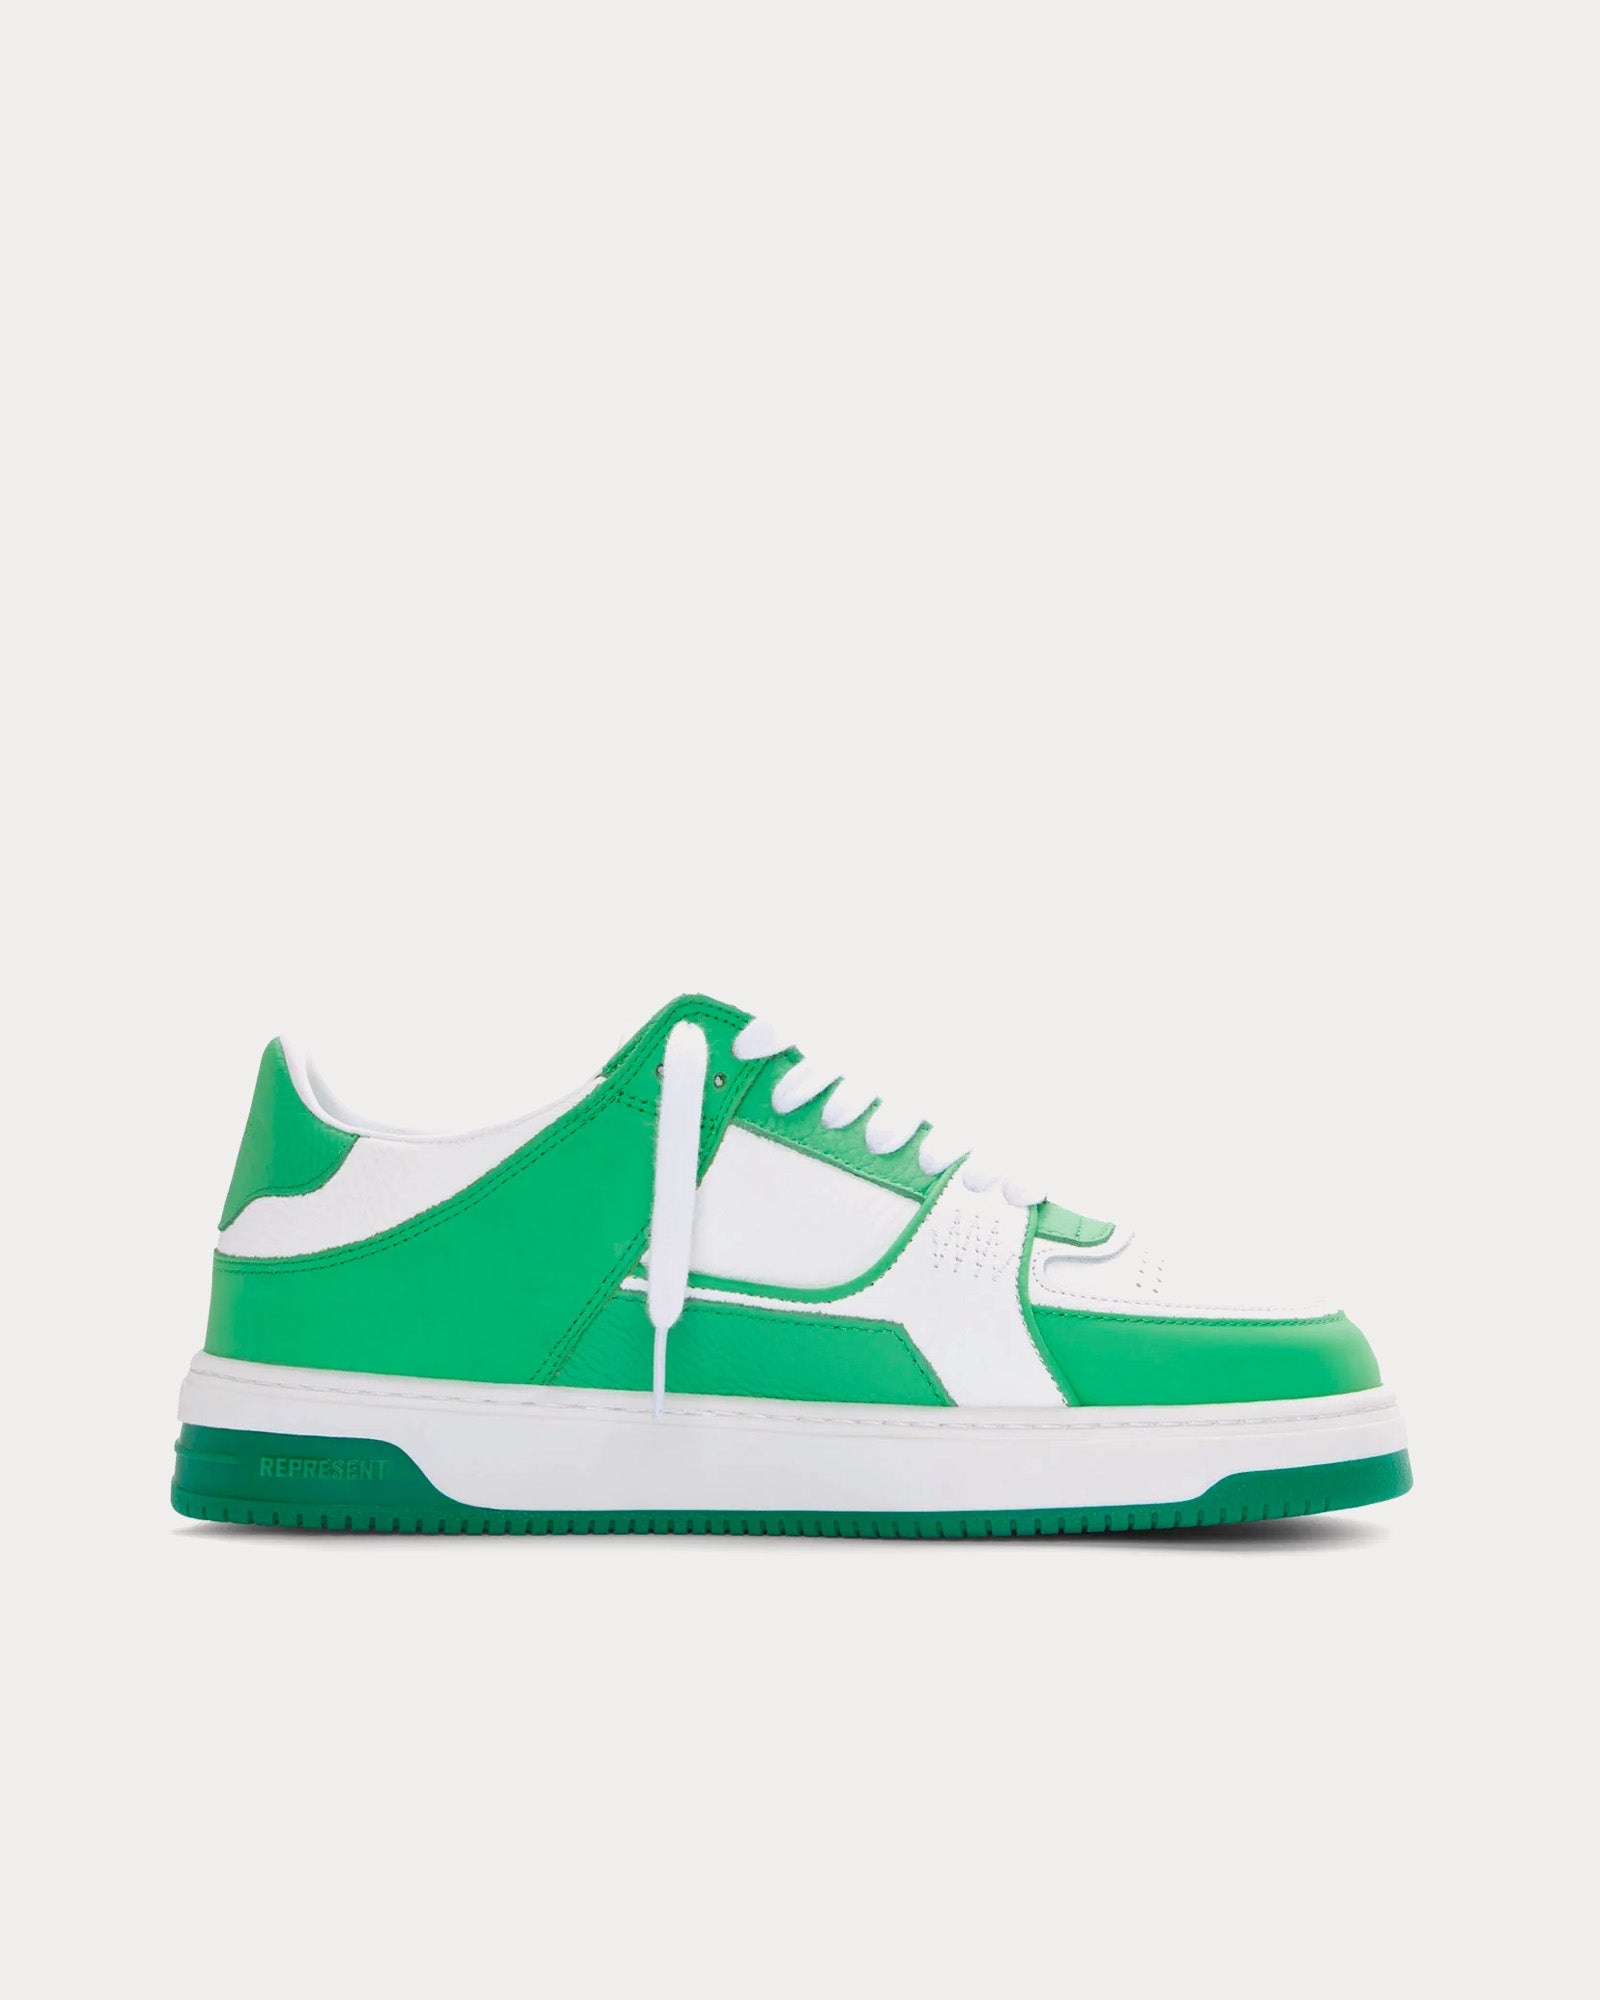 Represent - Apex Island Green Low Top Sneakers